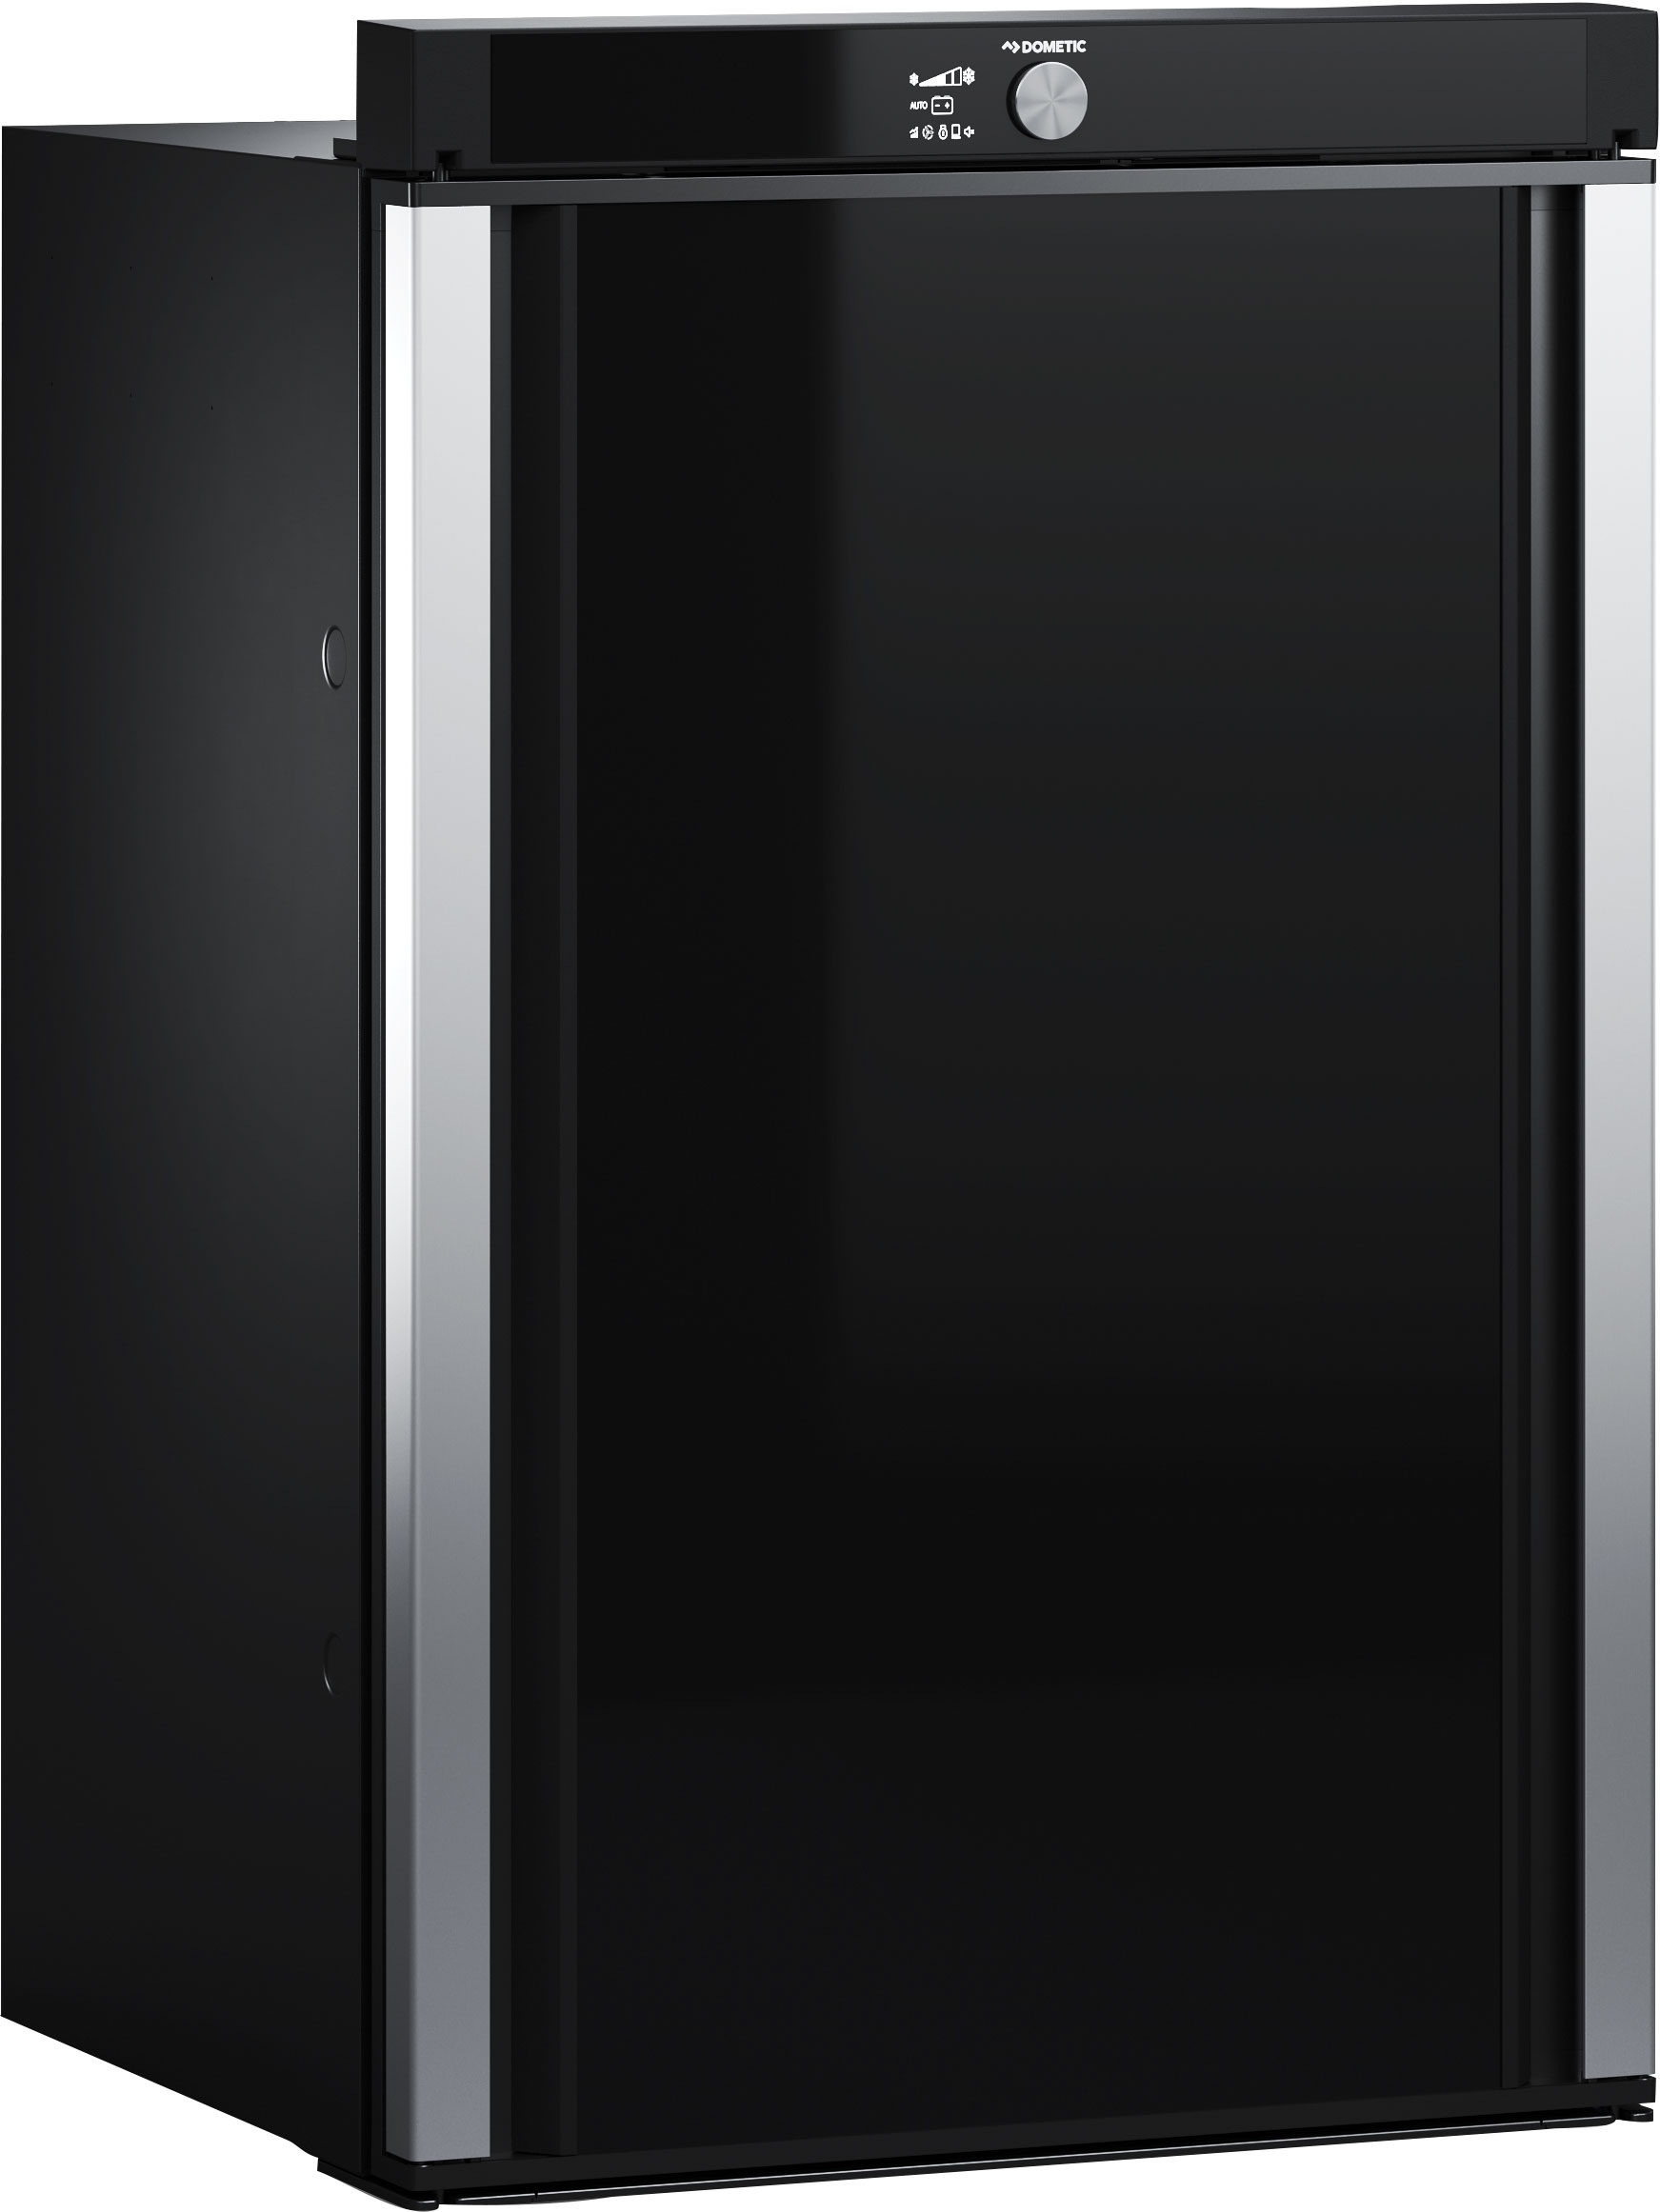 Dometic RM 10.5T Absorberkühlschrank mit TFT Display 93 Liter